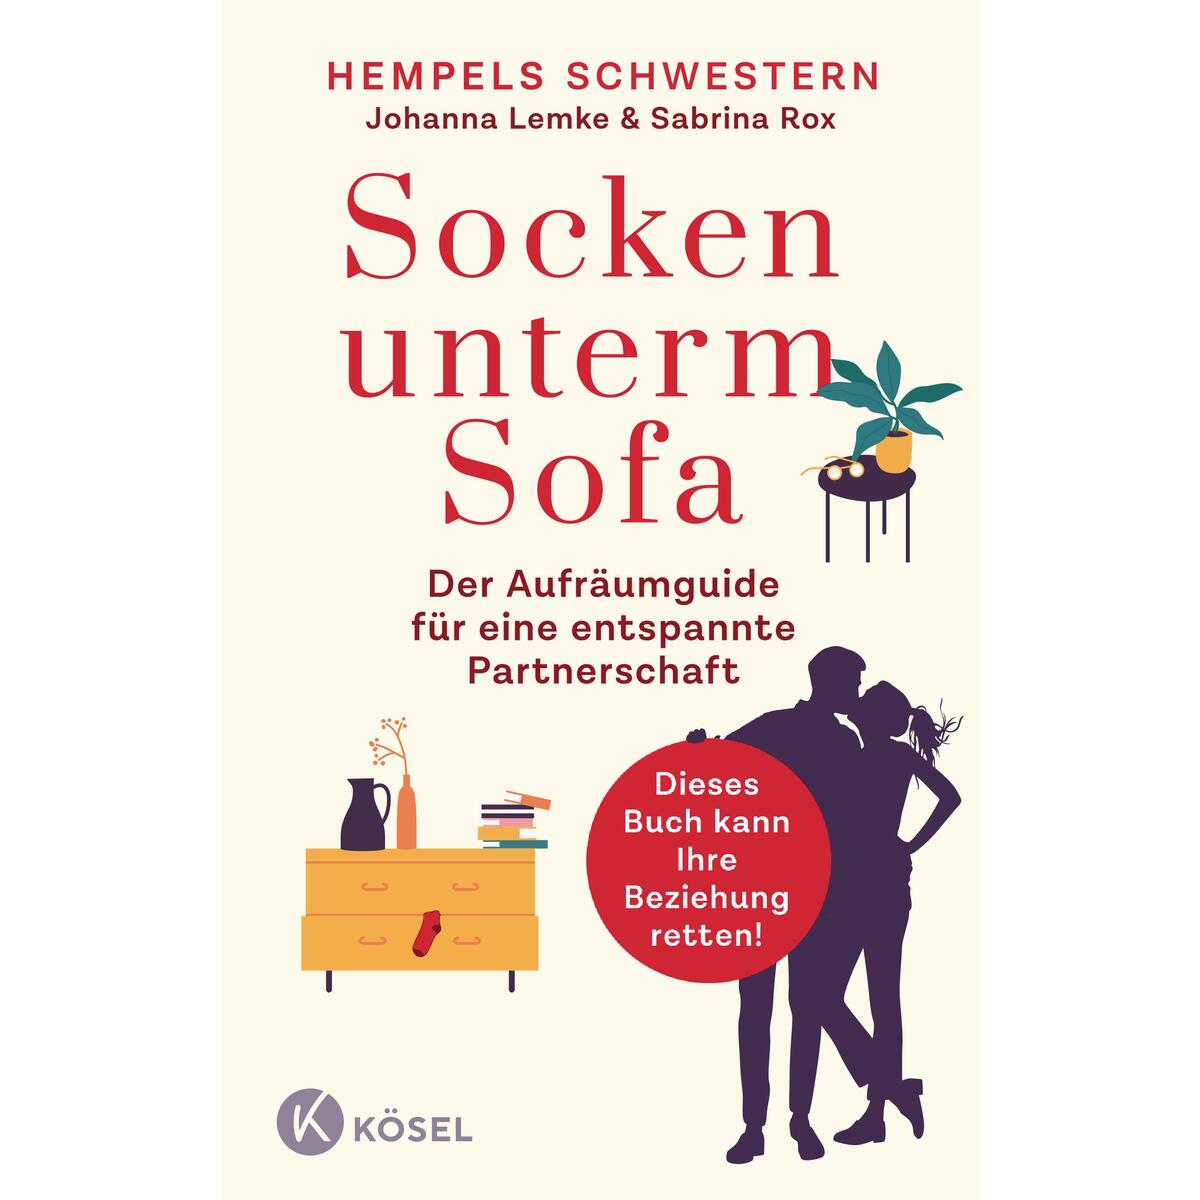 Socken unterm Sofa von Kösel-Verlag